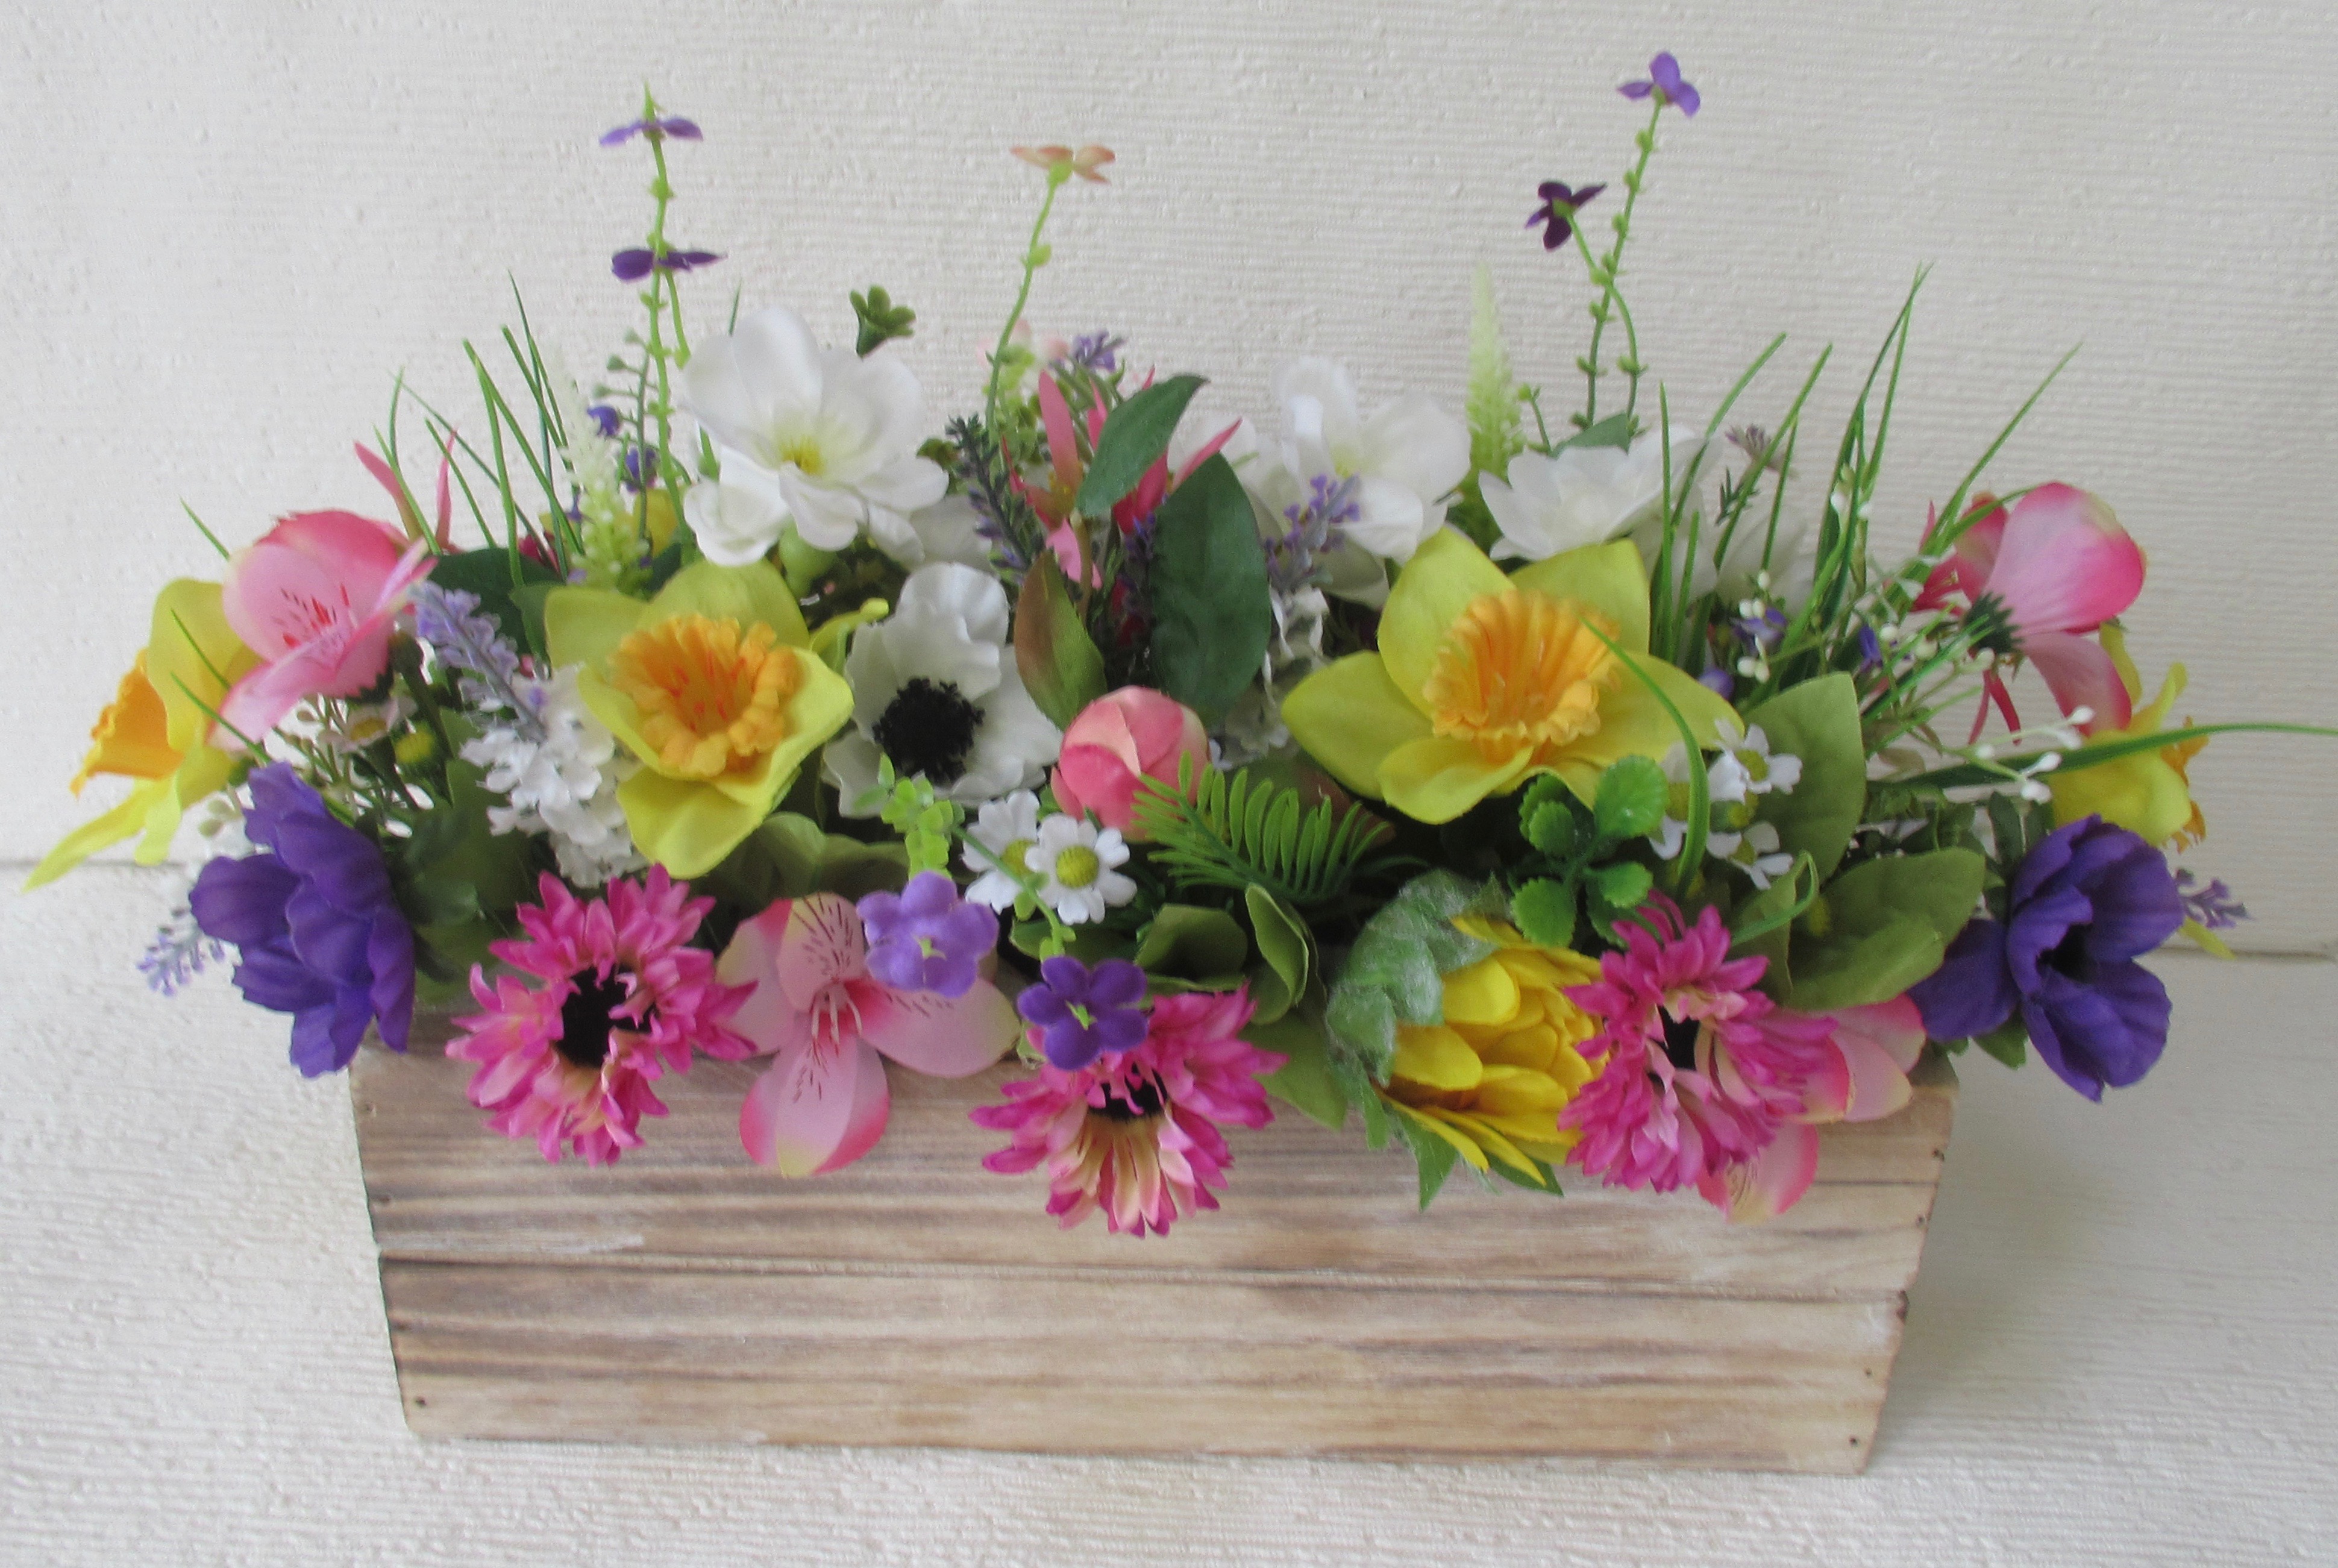 wild flower wooden trough centrepiece for weddings, wedding centrepiece, wooden trough with flowers